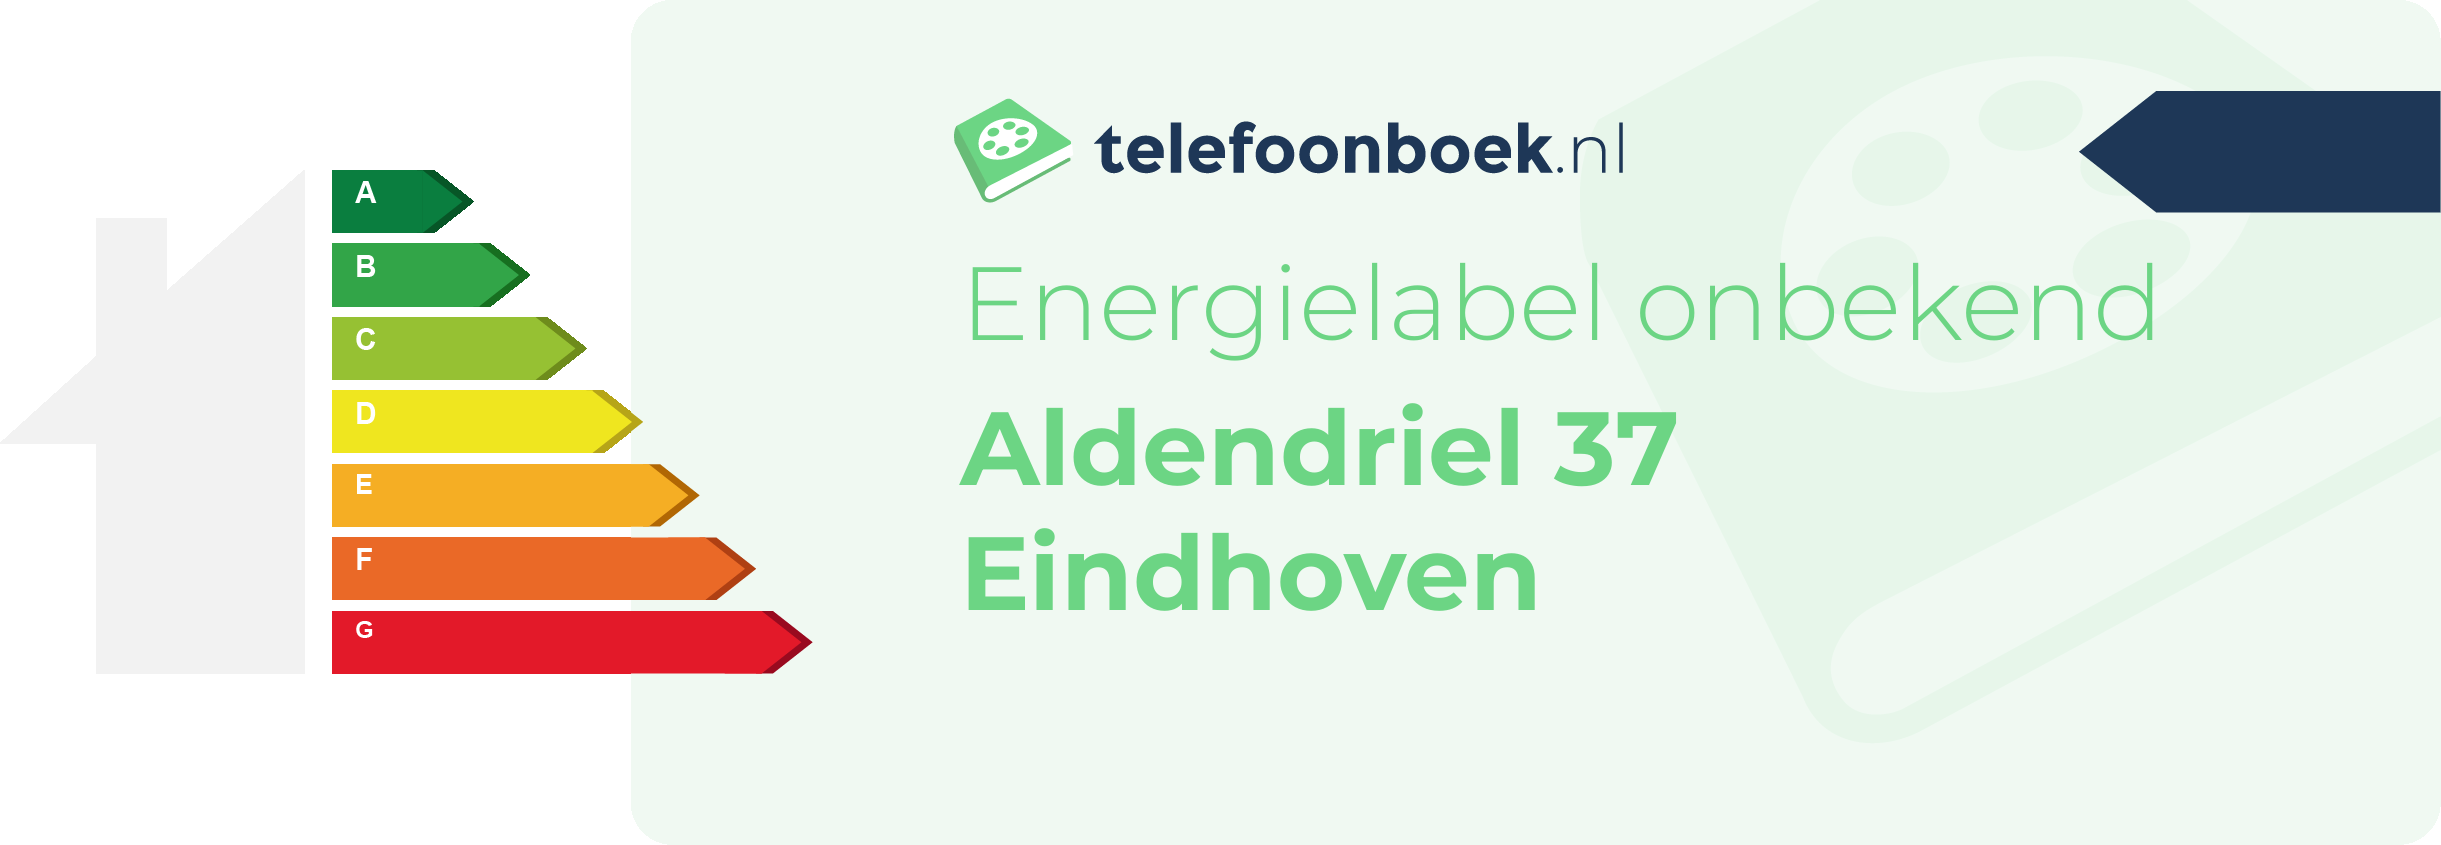 Energielabel Aldendriel 37 Eindhoven